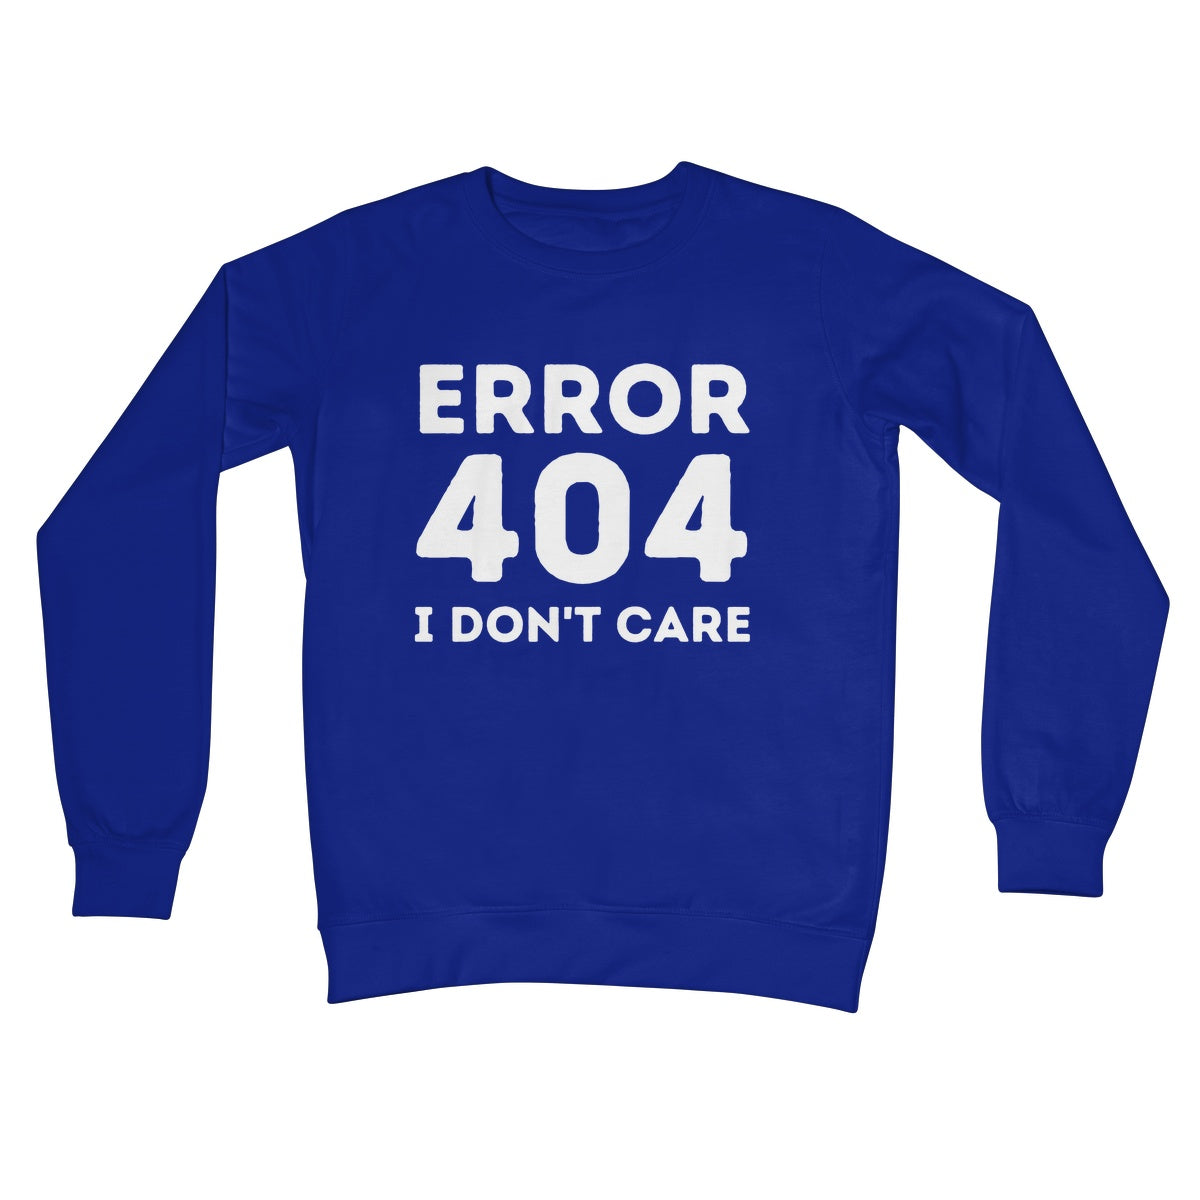 error 404 I don't care jumper blue